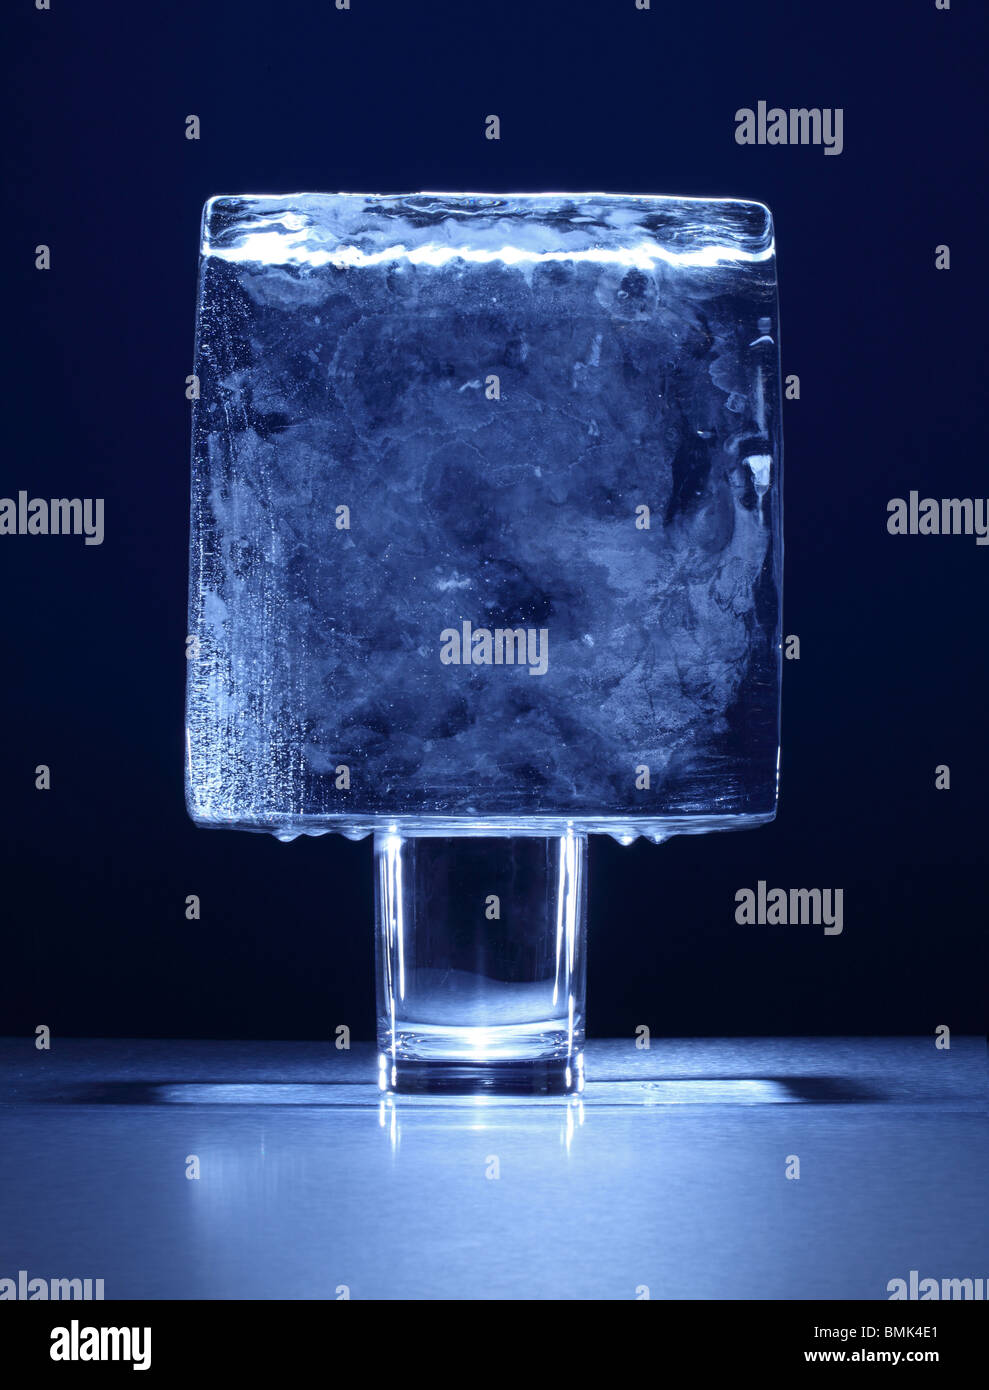 Un blocco congelato di ghiaccio sulla sommità di un piccolo bicchiere Foto Stock